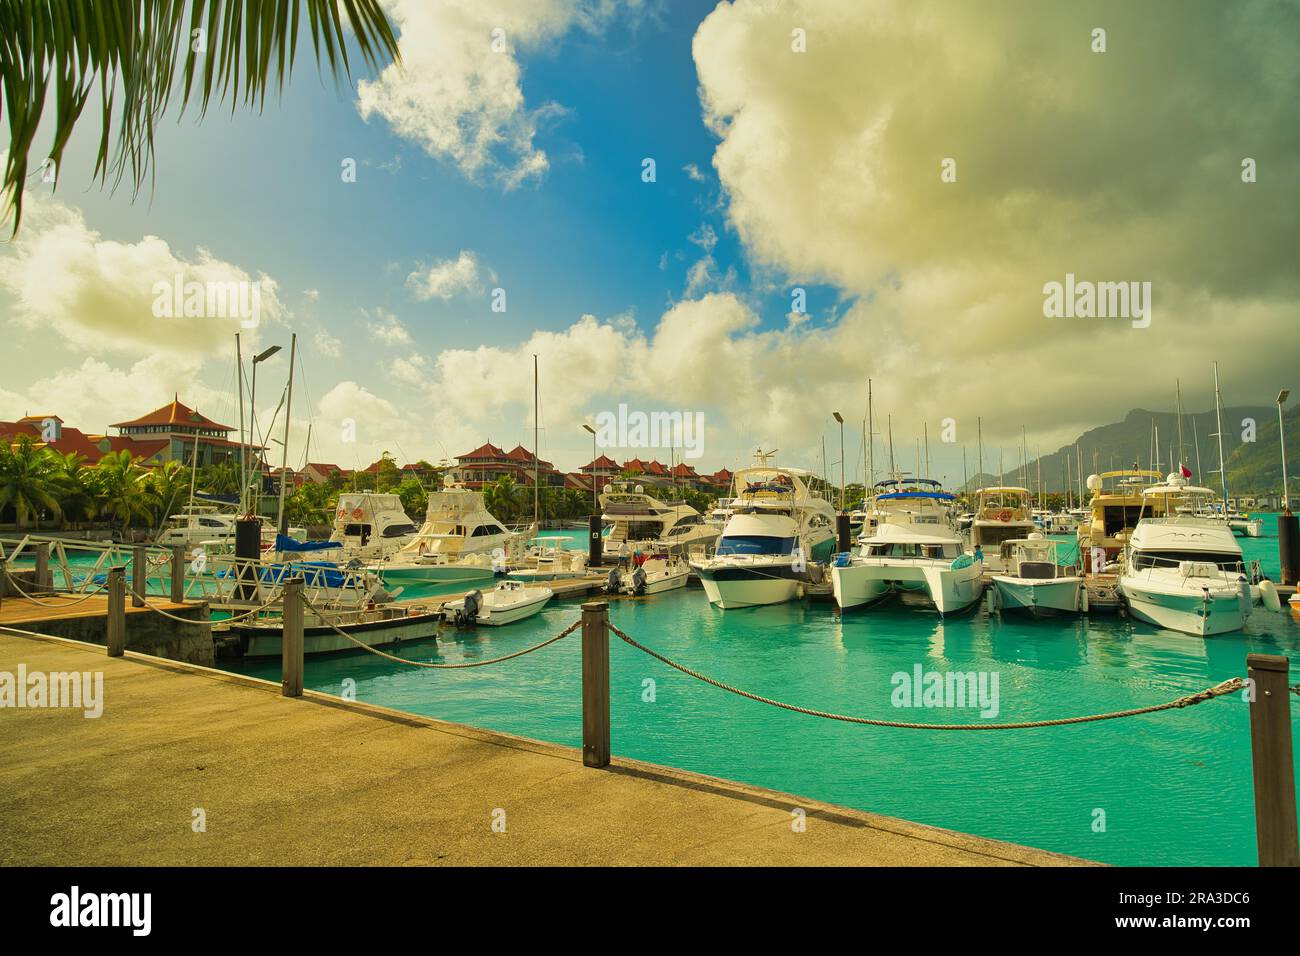 Attracco di yacht e barche al porticciolo di eden Island con ville sul retro, vista dell'isola di Mahe, lussureggiante montagna, Seychelles Foto Stock